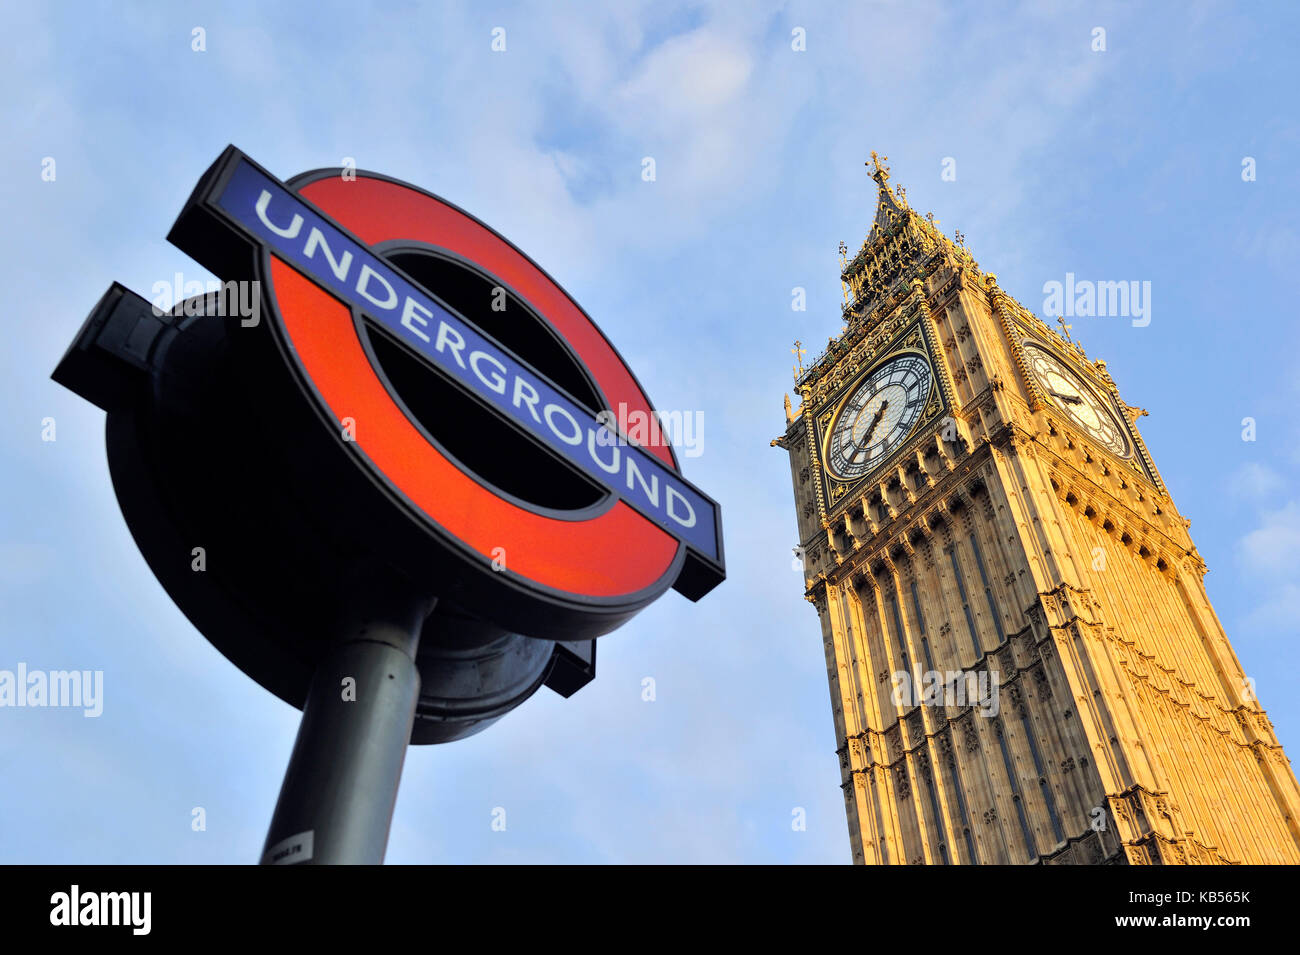 Regno Unito, Londra, Westminster, Big ben e segno sotterraneo (Logo « Undergound » registrato, richiesta di autorizzazione necessaria prima della pubblicazione) Foto Stock